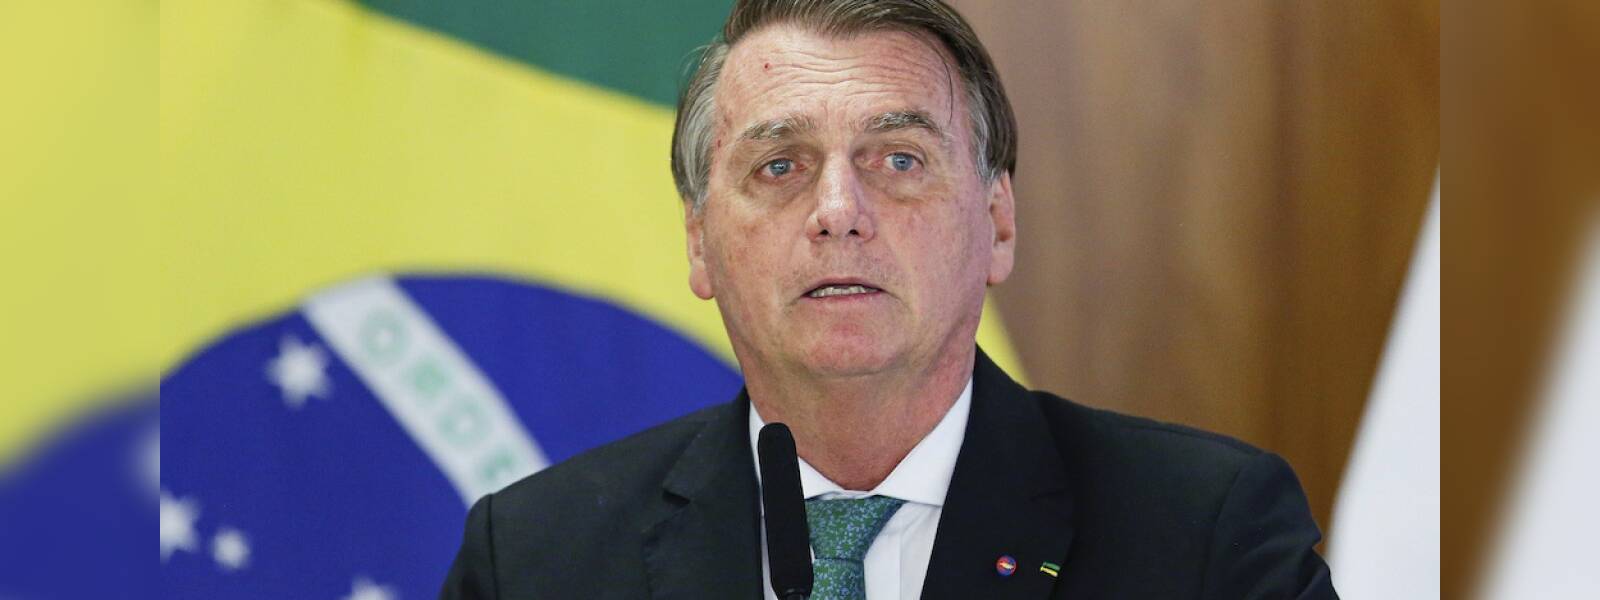 Brazil top Court includes Bolsonaro in riot probe